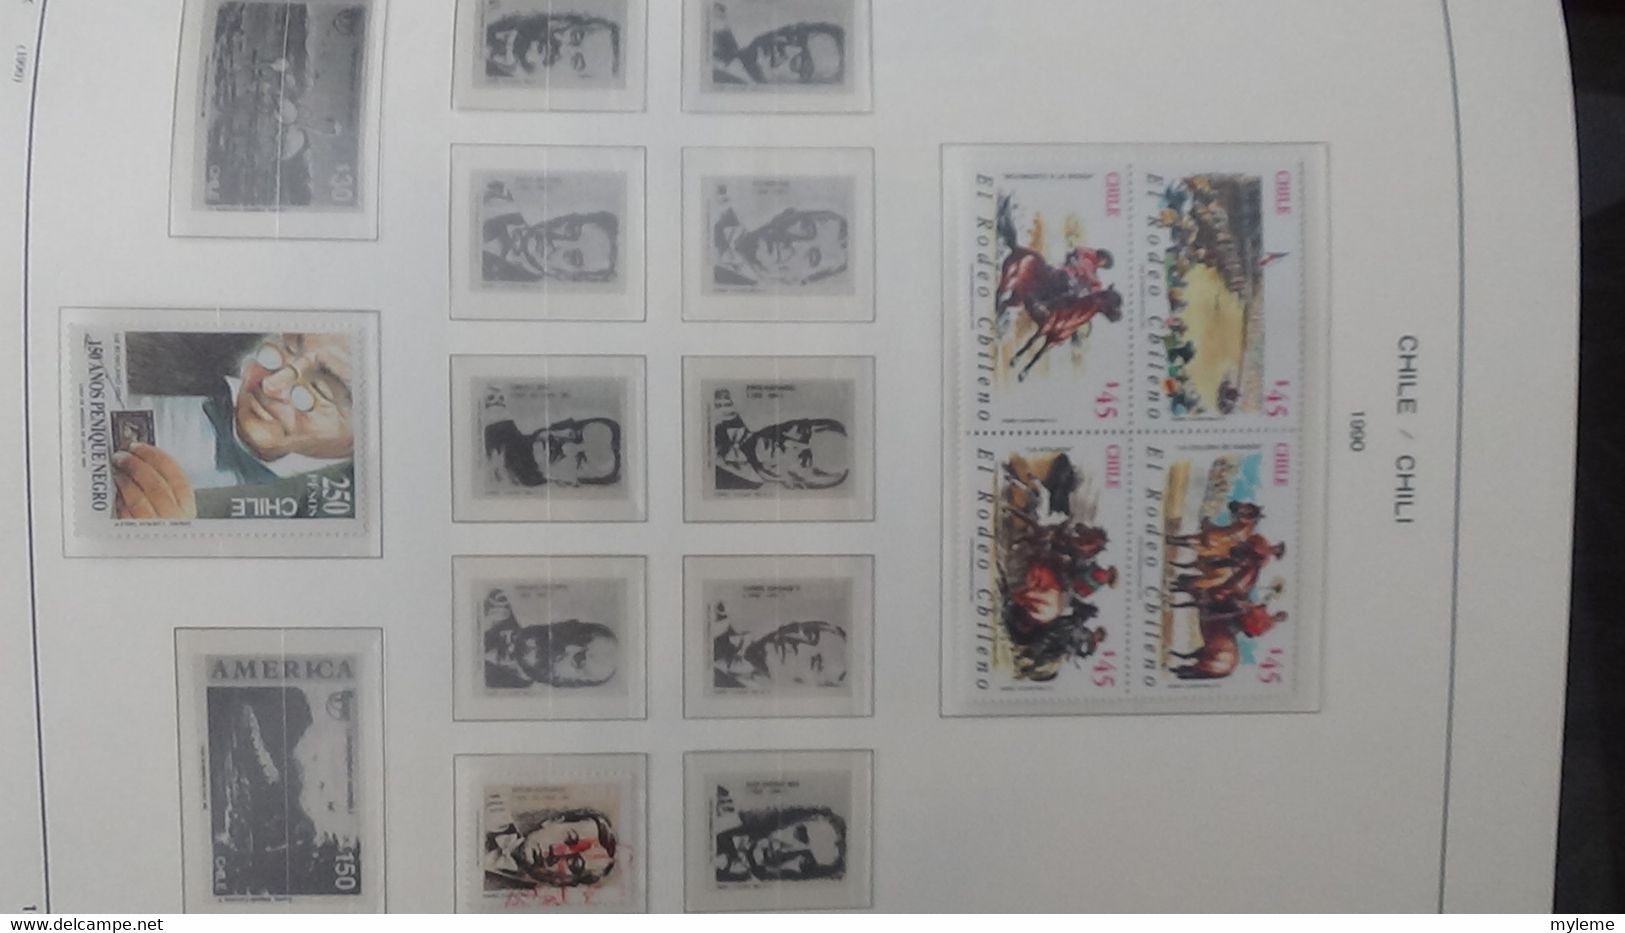 S197 Collection du Chili timbres et blocs ** en reliure  SCHAUBECK de 1974 à 1997. A saisir !!!